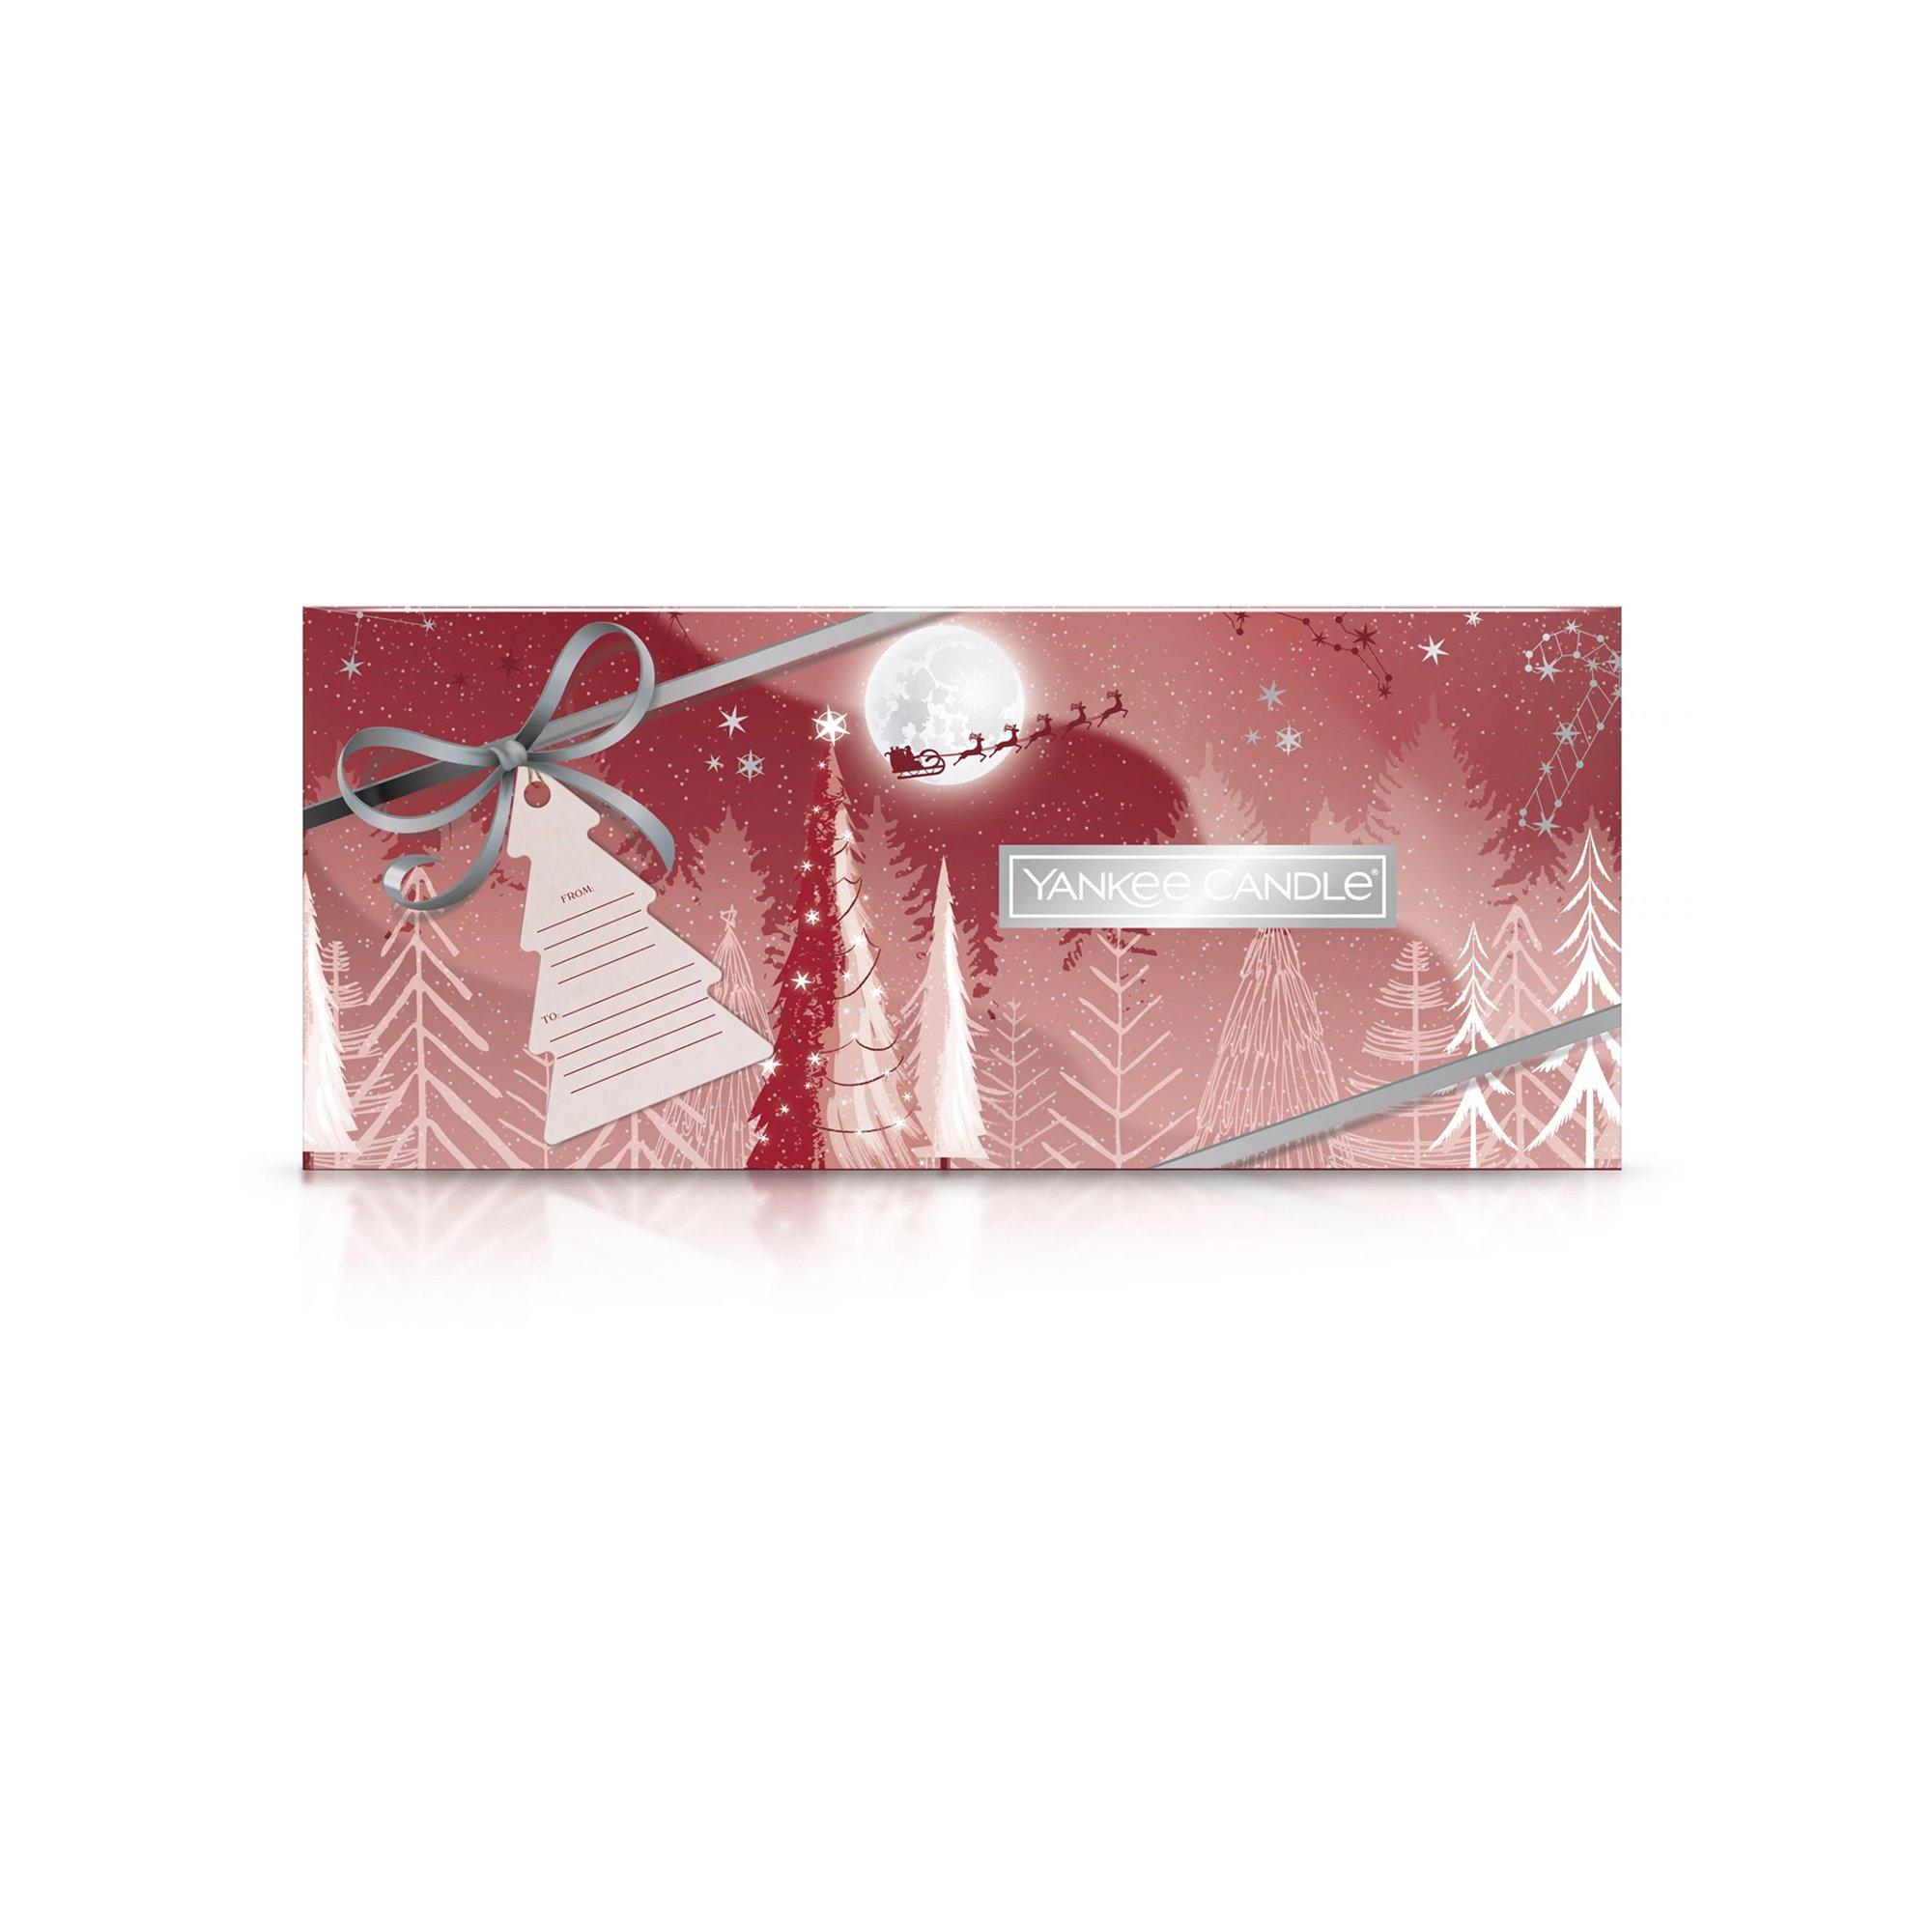 Yankee Candle Signature Geschenkset Weihnachten Duftkerzen Holiday Bright Lights 10 Tea Light 1 Holder Giftset 